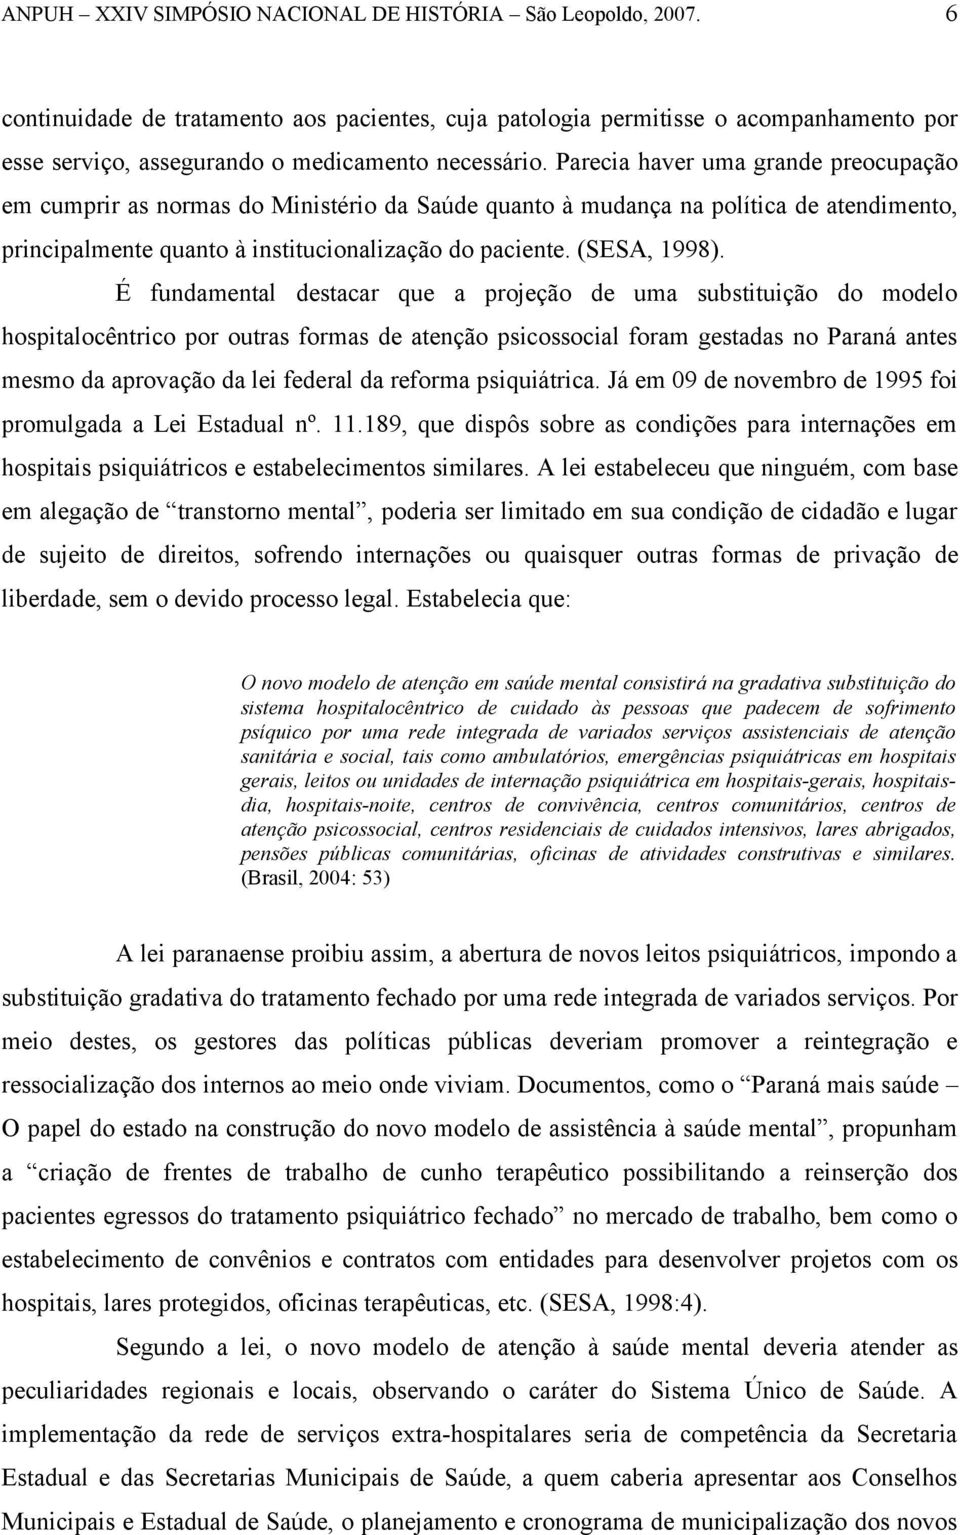 É fundamental destacar que a projeção de uma substituição do modelo hospitalocêntrico por outras formas de atenção psicossocial foram gestadas no Paraná antes mesmo da aprovação da lei federal da